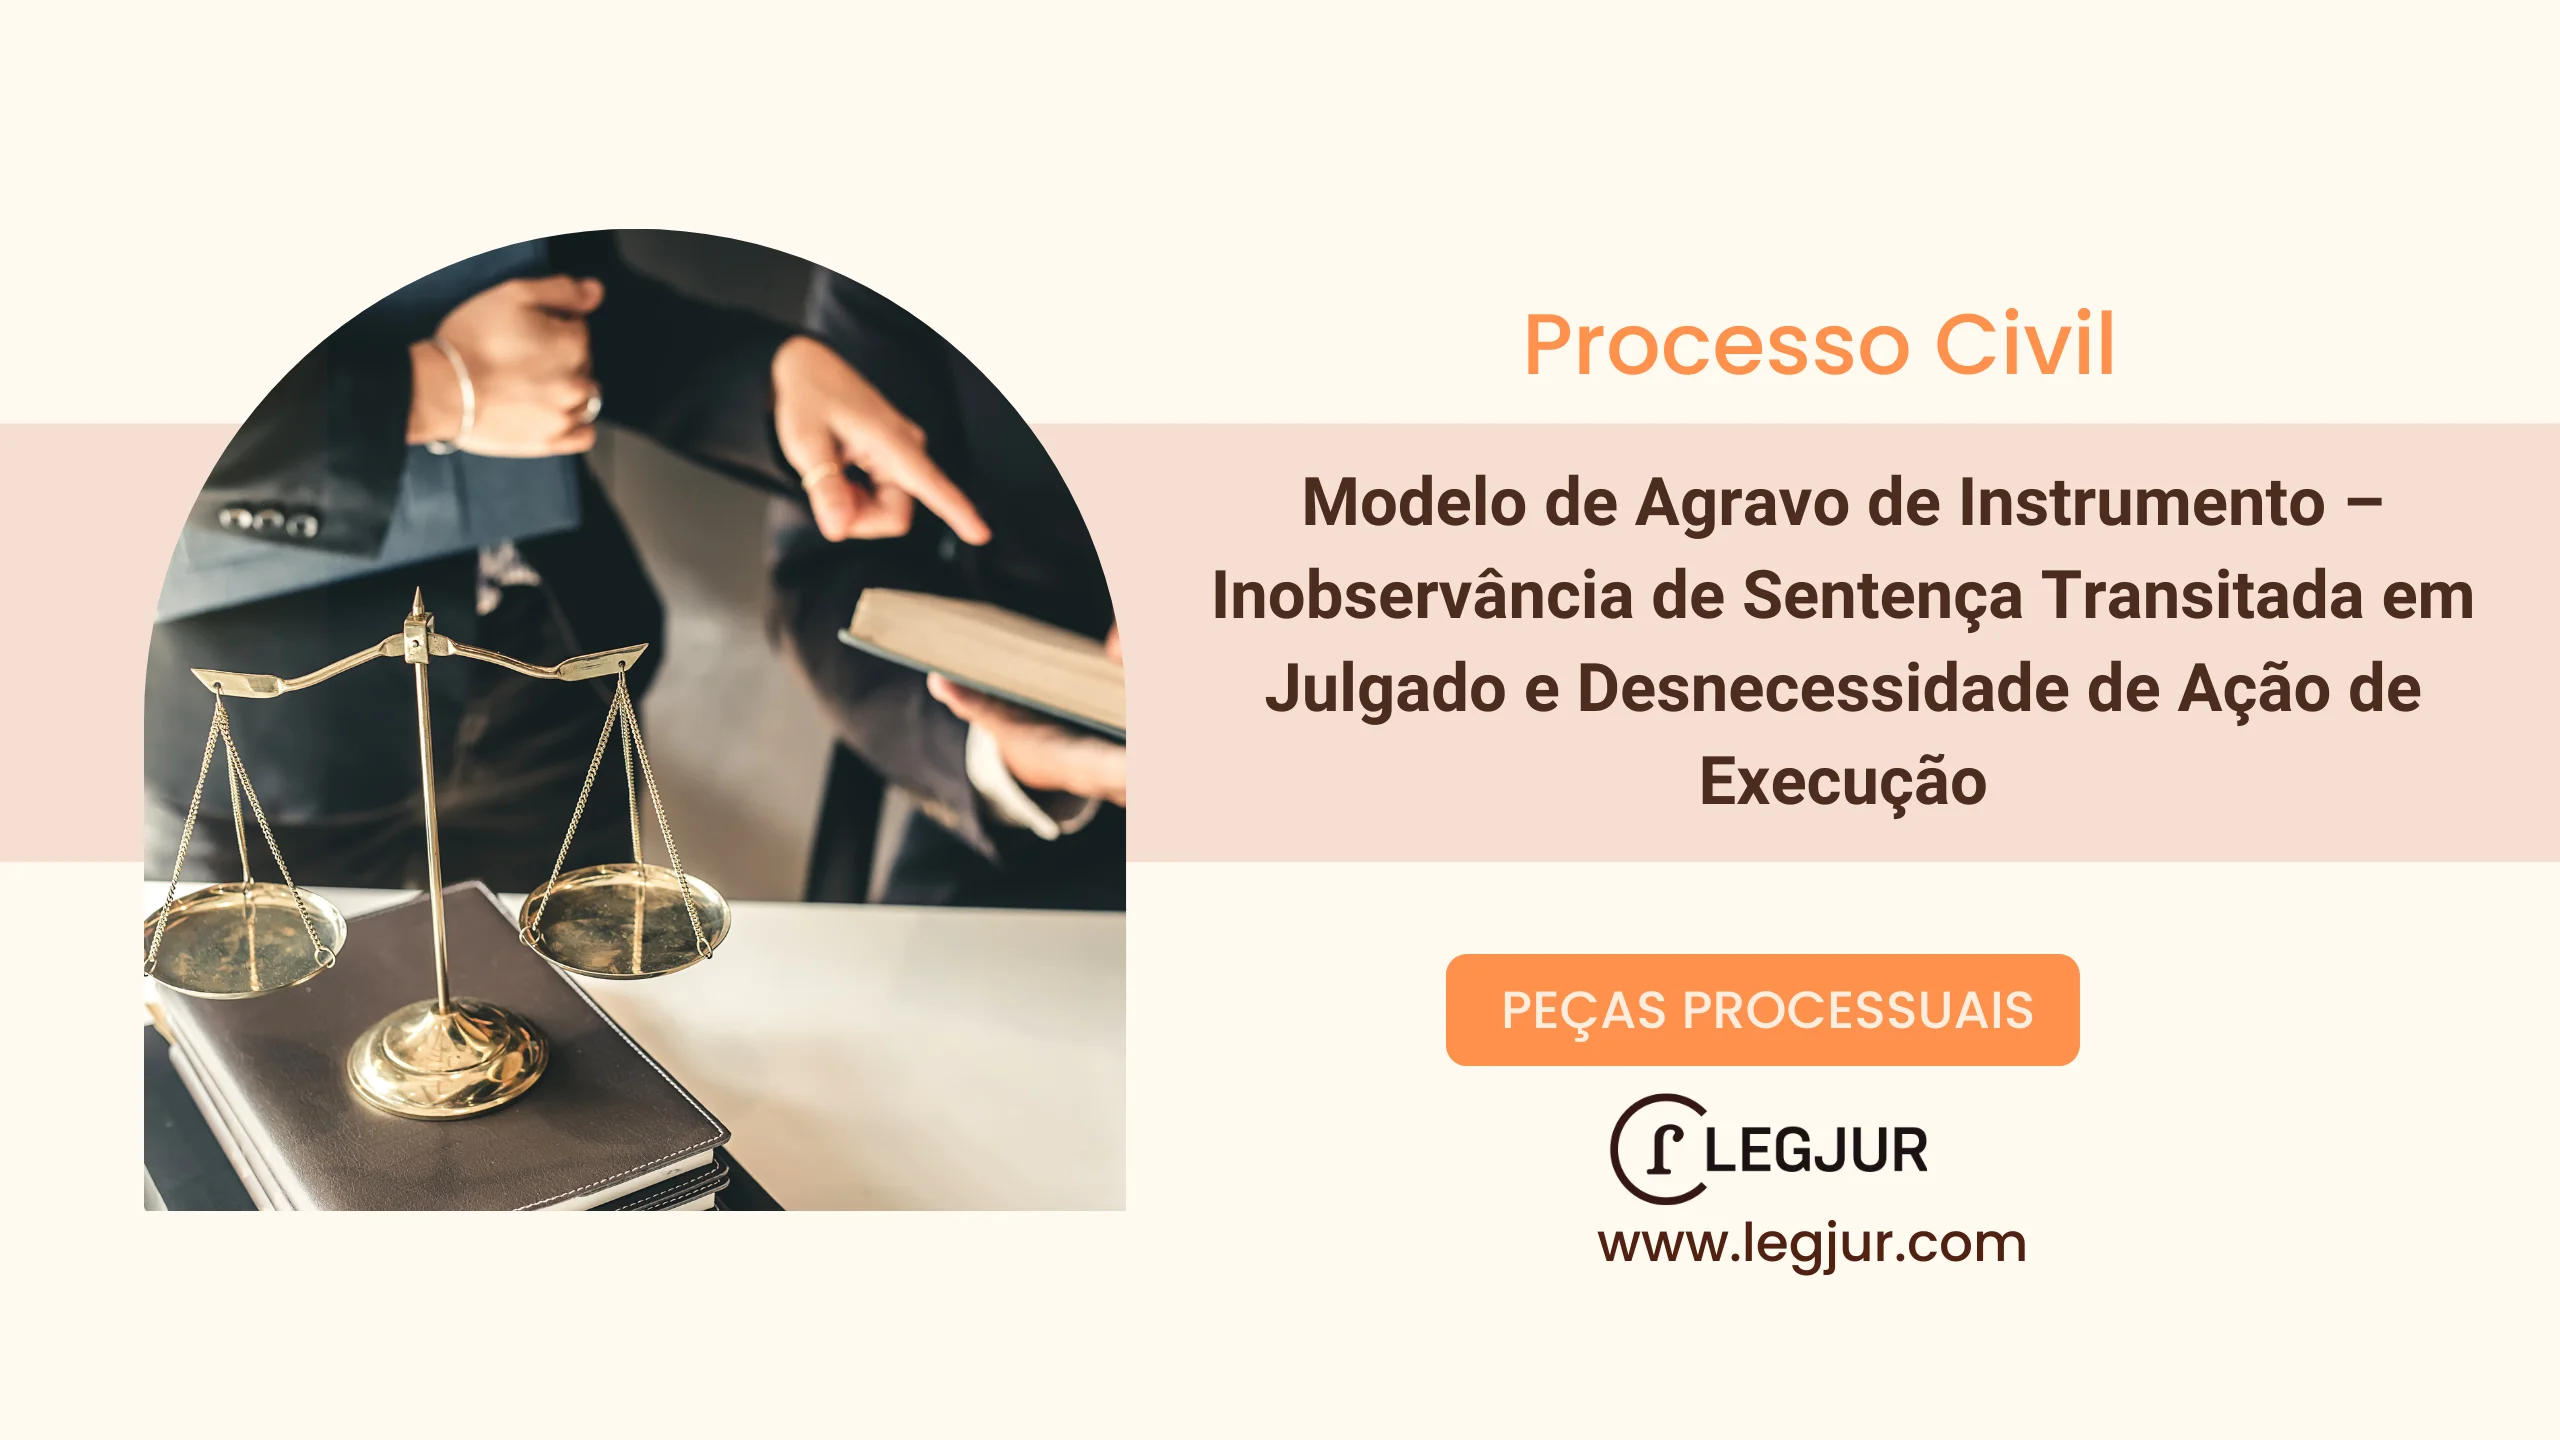 Modelo de Agravo de Instrumento – Inobservância de Sentença Transitada em Julgado e Desnecessidade de Ação de Execução